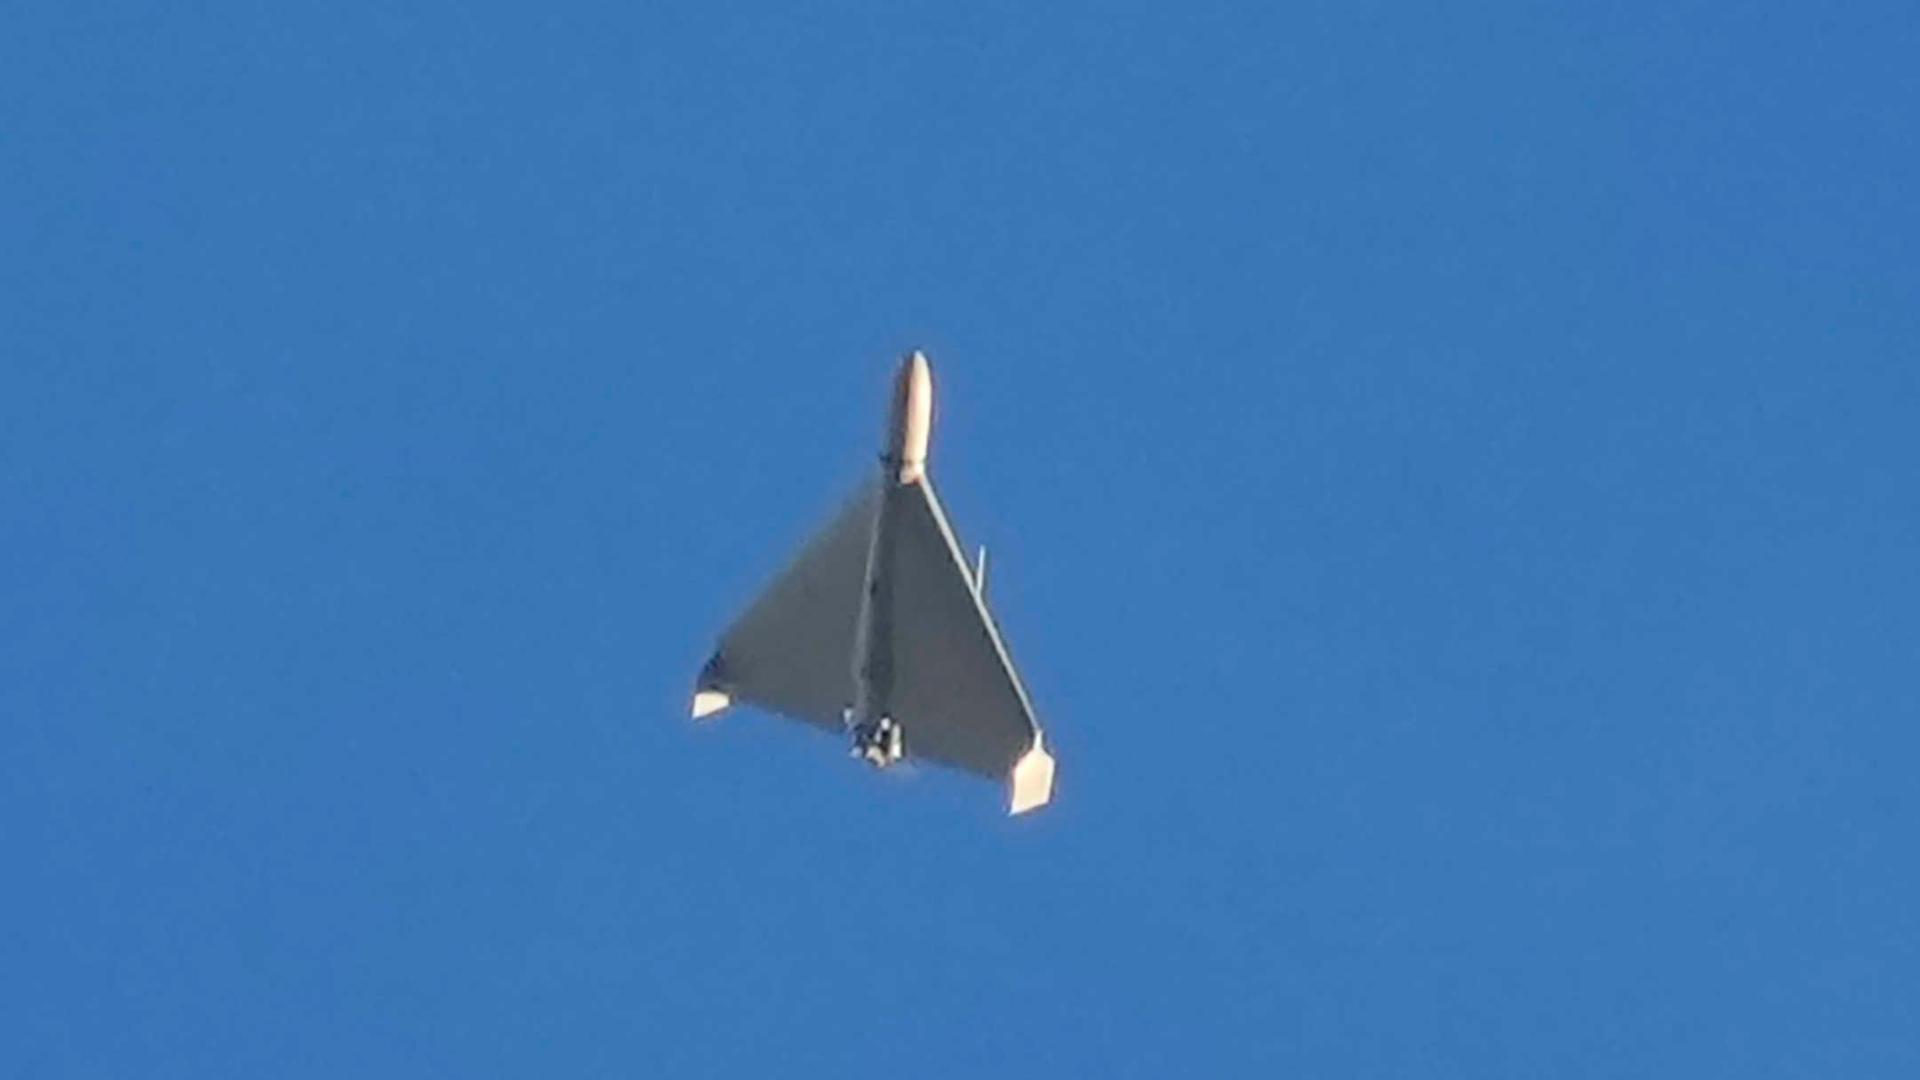 Das Bild zeigt eine Drohne von unten gesehen bei ihrem Flug unter einem blauen Himmel. 